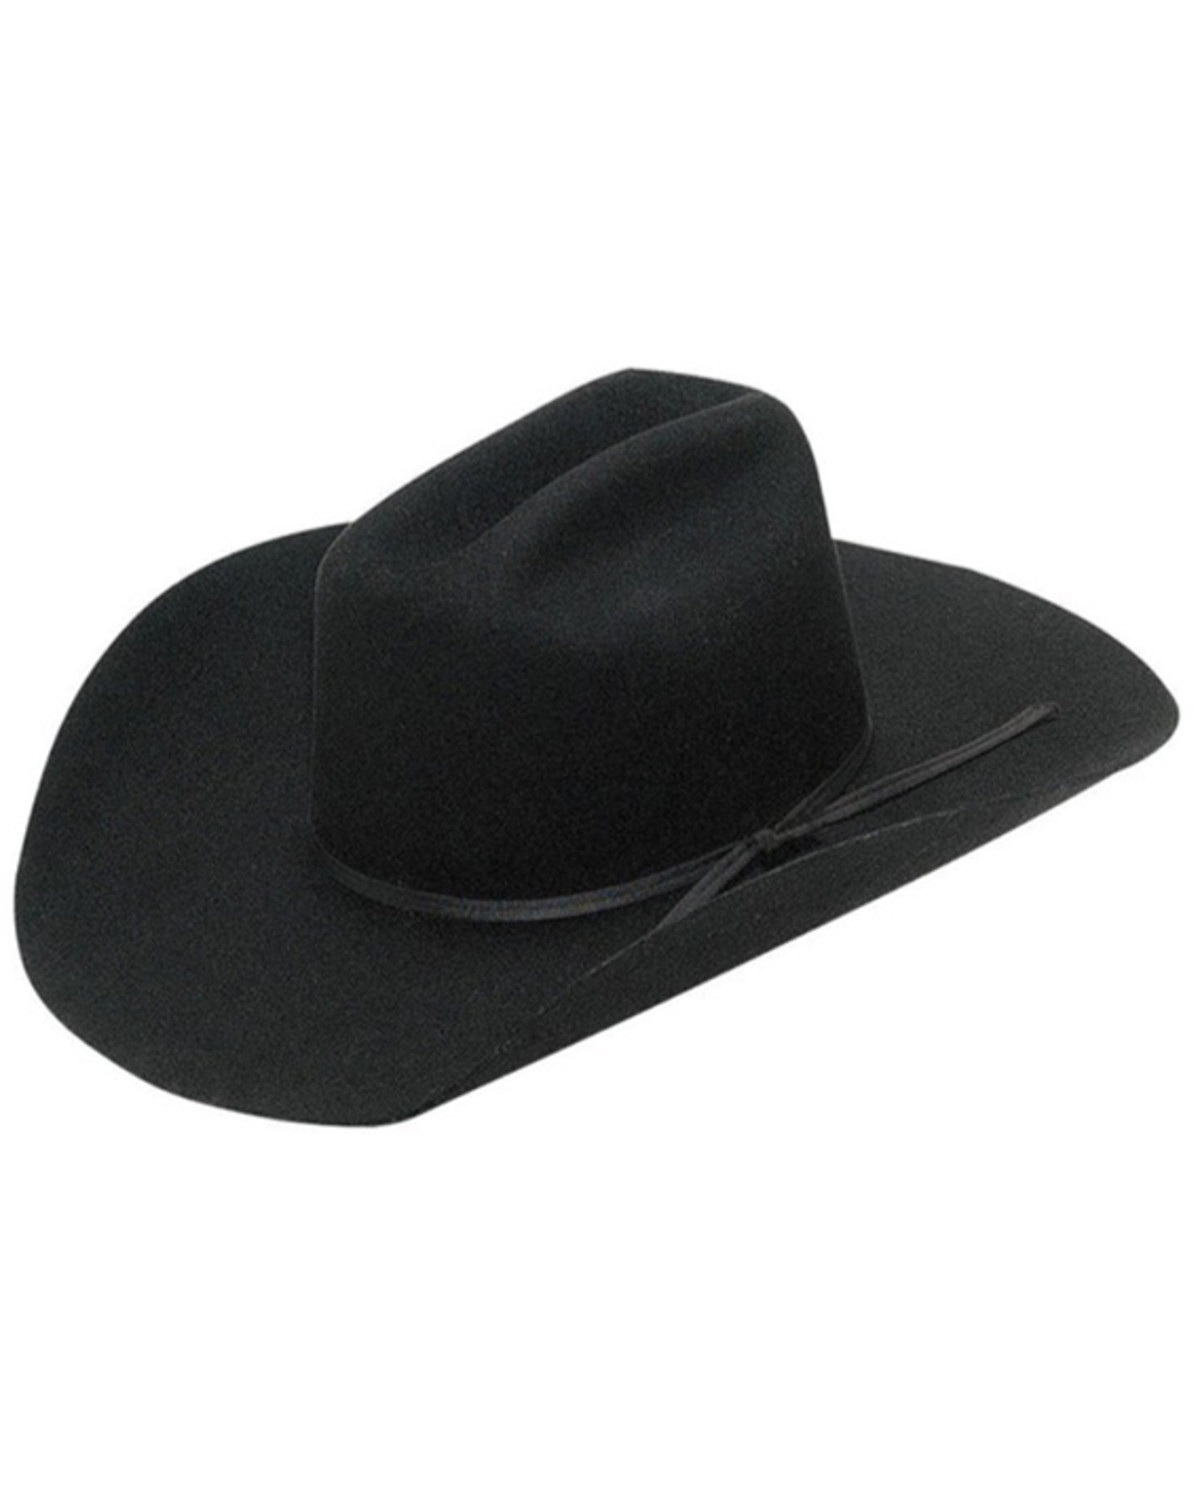 M & F Western Kids' Felt Cowboy Hat